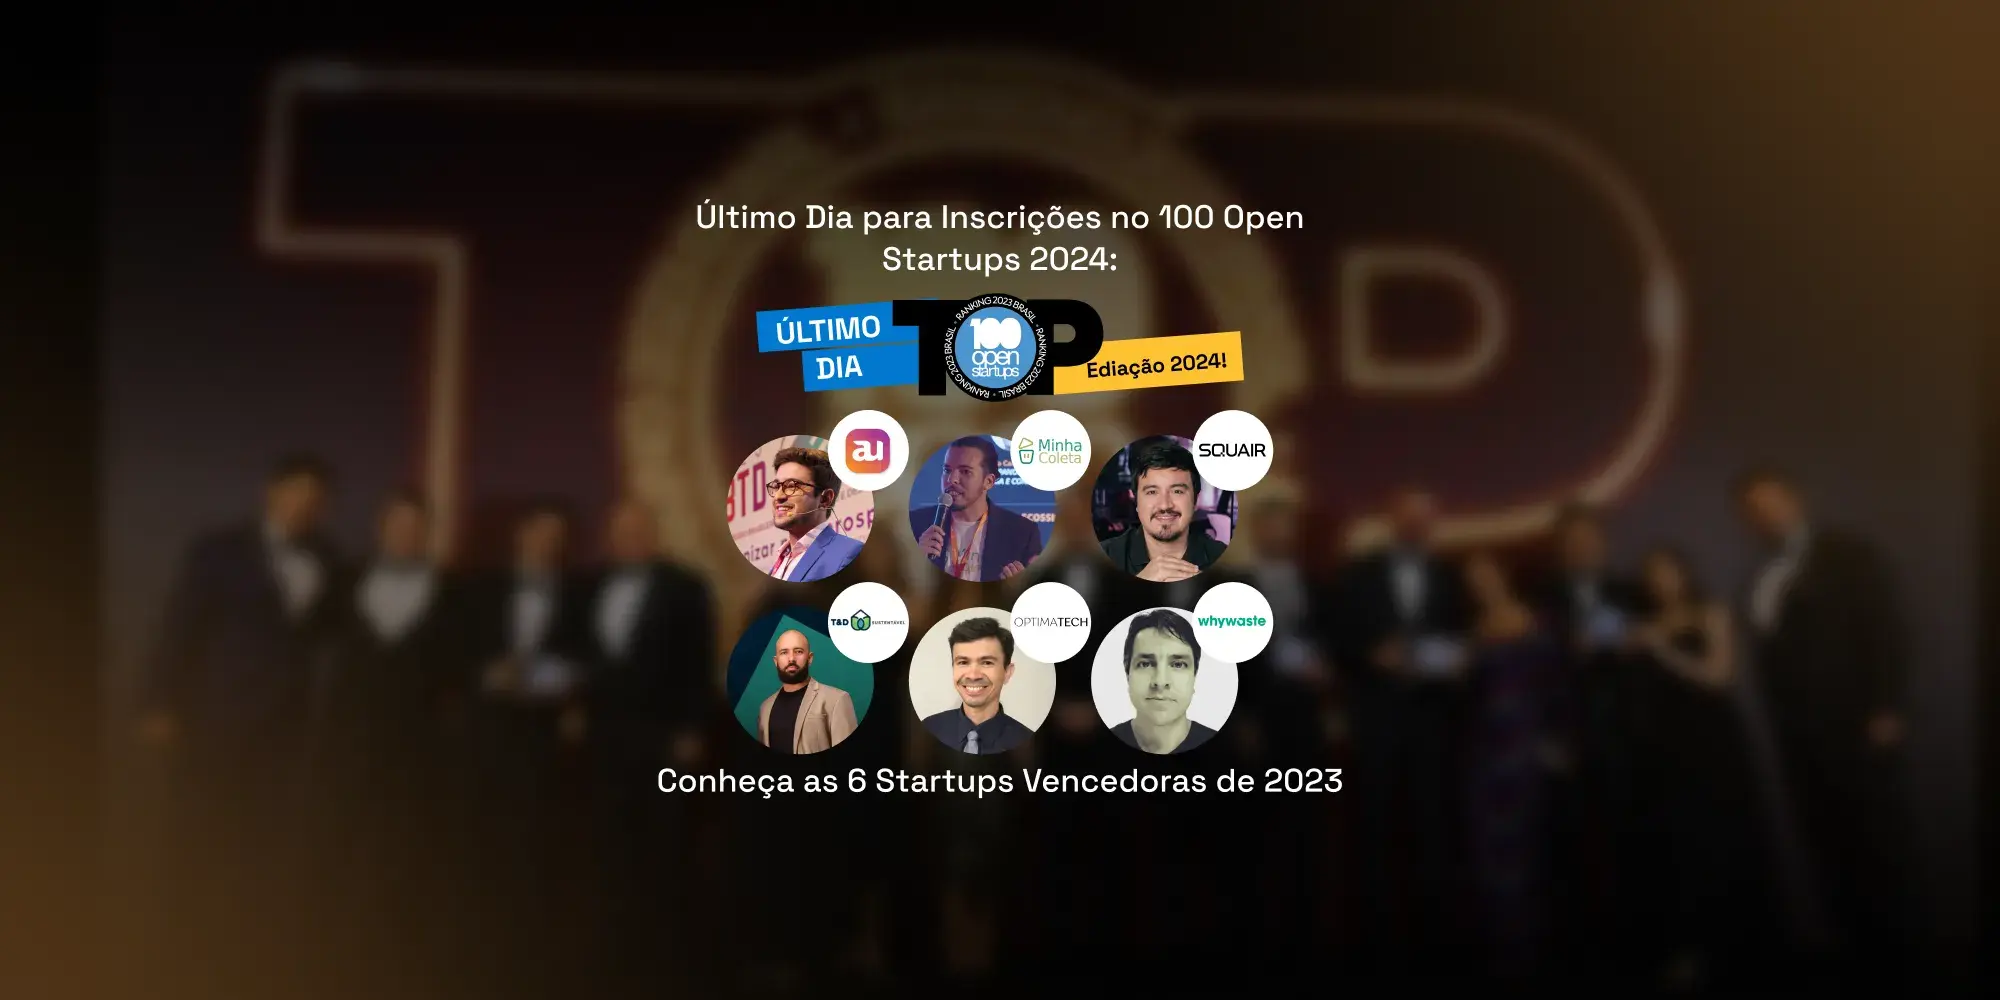 Último Dia de Inscrição no 100 Open Startups 2024: Conheça 6 Startups Vencedoras de 2023